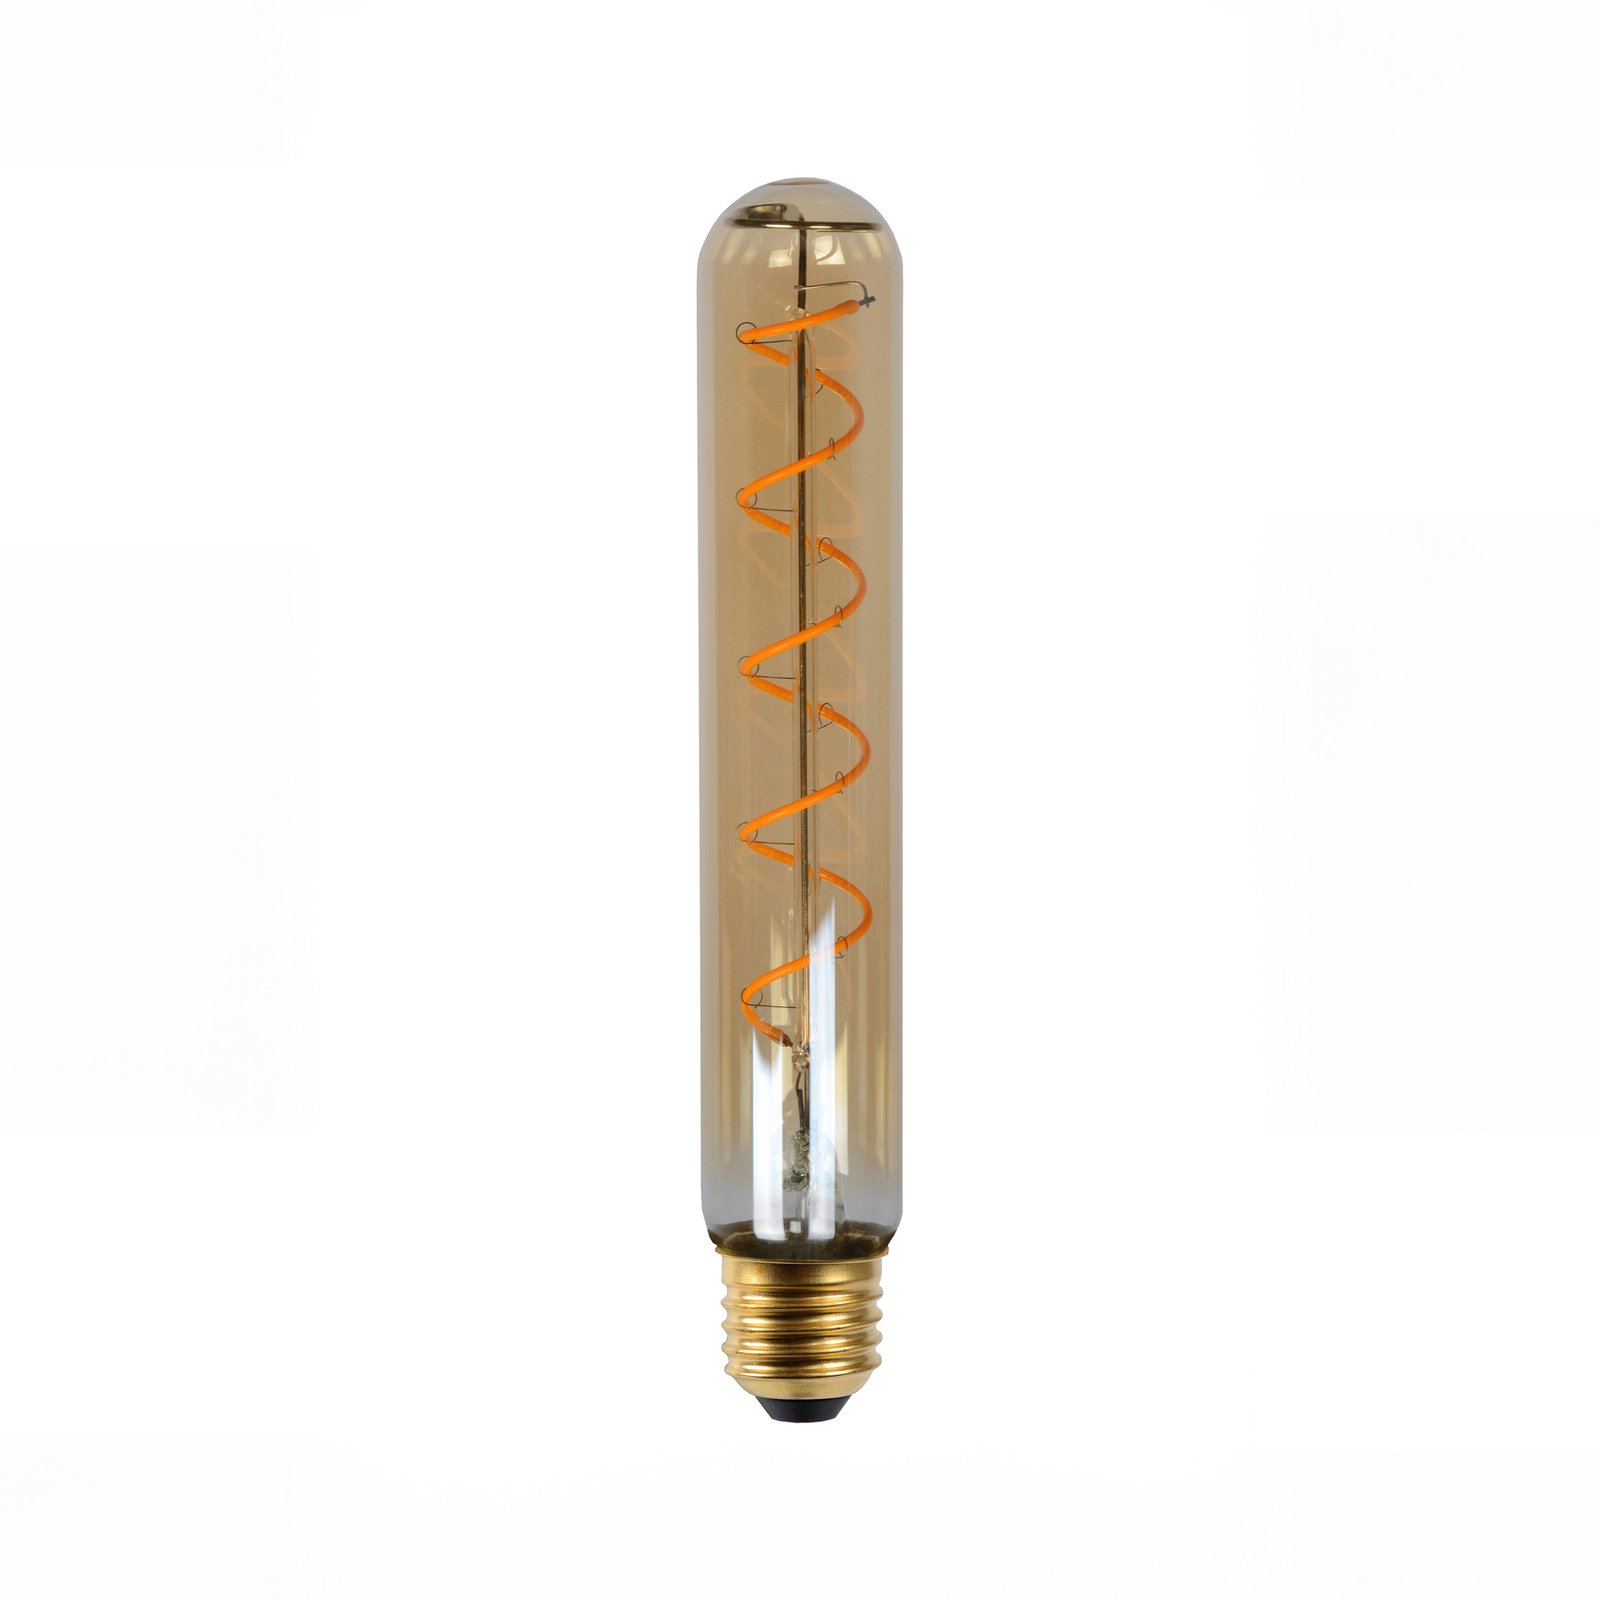 LED bulb E27 tube T32 5 W 2,200 K dimmable 20 cm